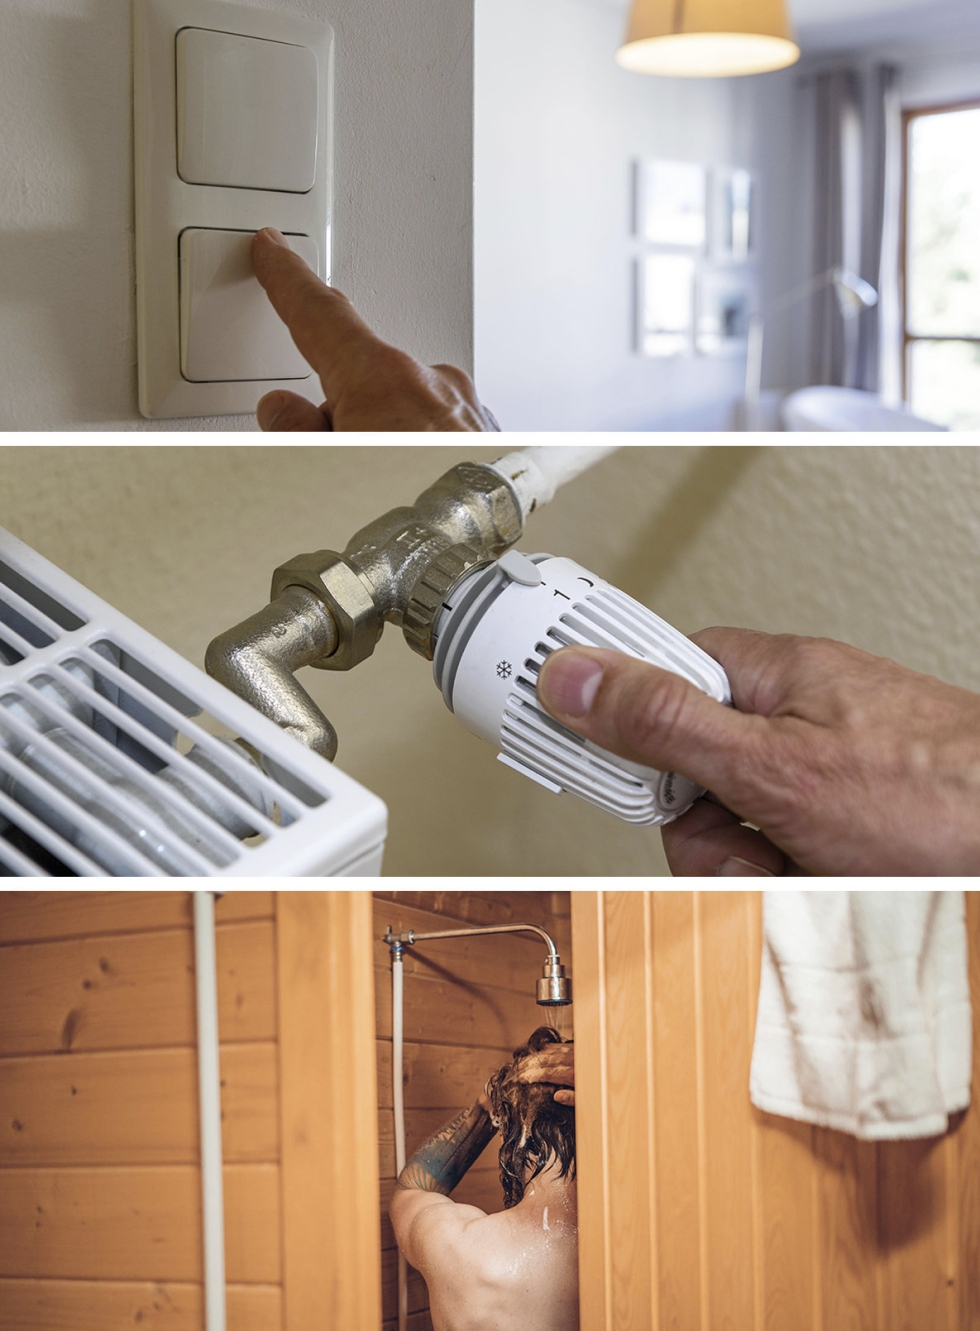 Muutamia yksinkertaisia ja tehokkaita energiansäästökeinoja: lämmitystä pienemmälle, turhat valot pois ja lyhyempiä suihkuja.